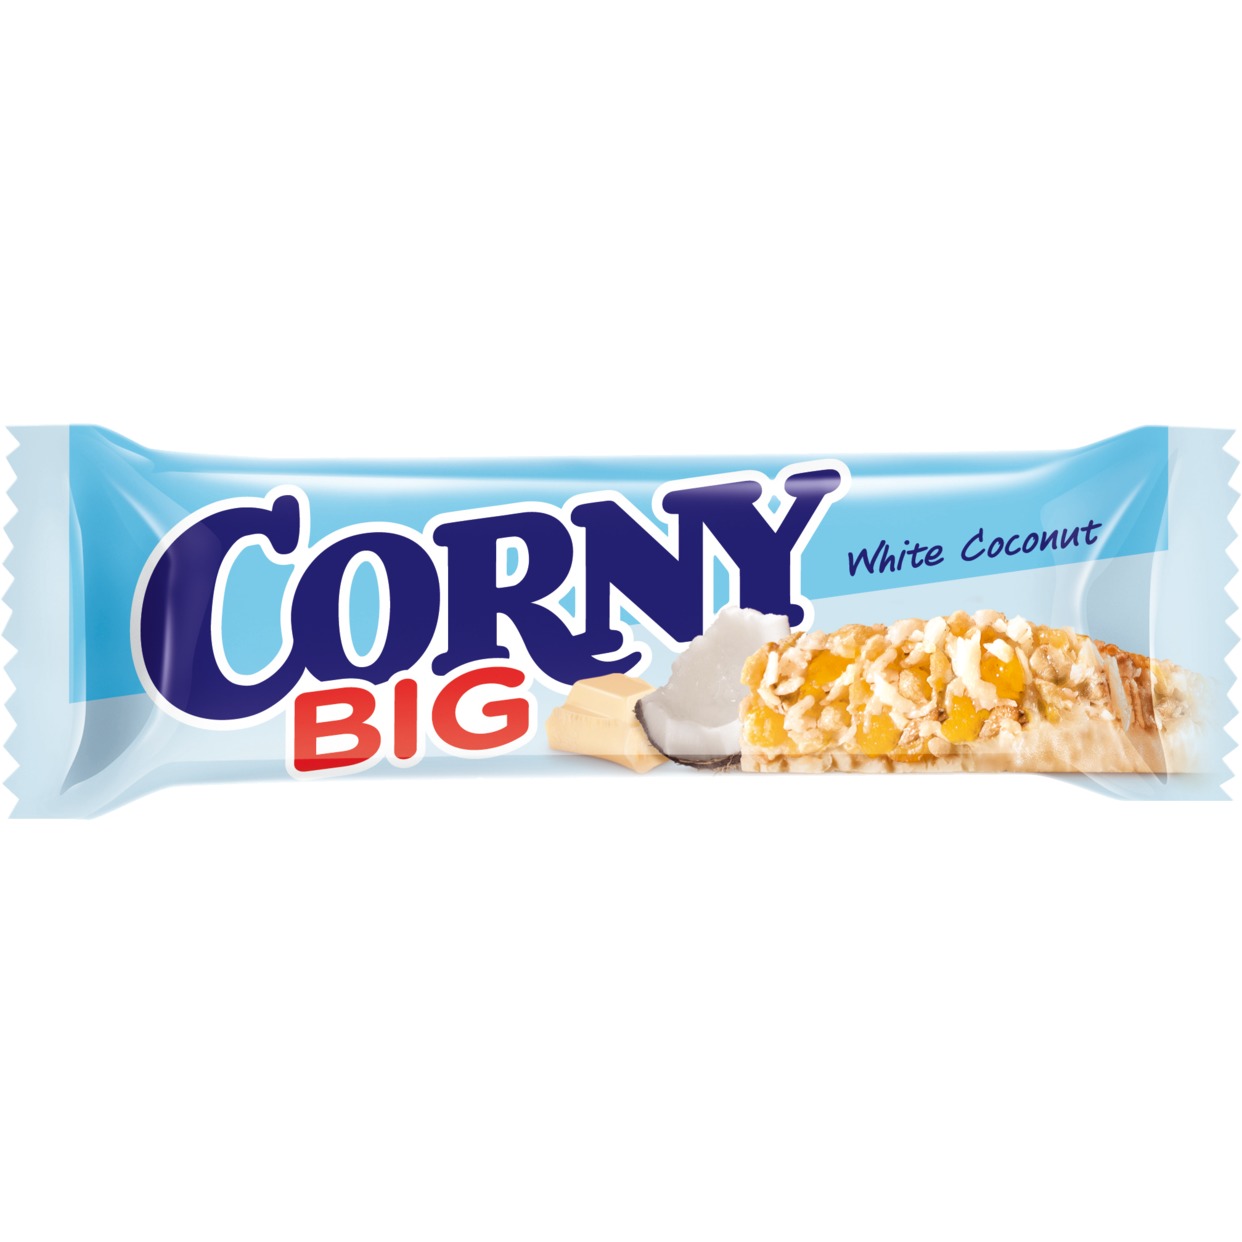 Злаковая Полоска Corny Big, белый шоколад, 40 г по акции в Пятерочке